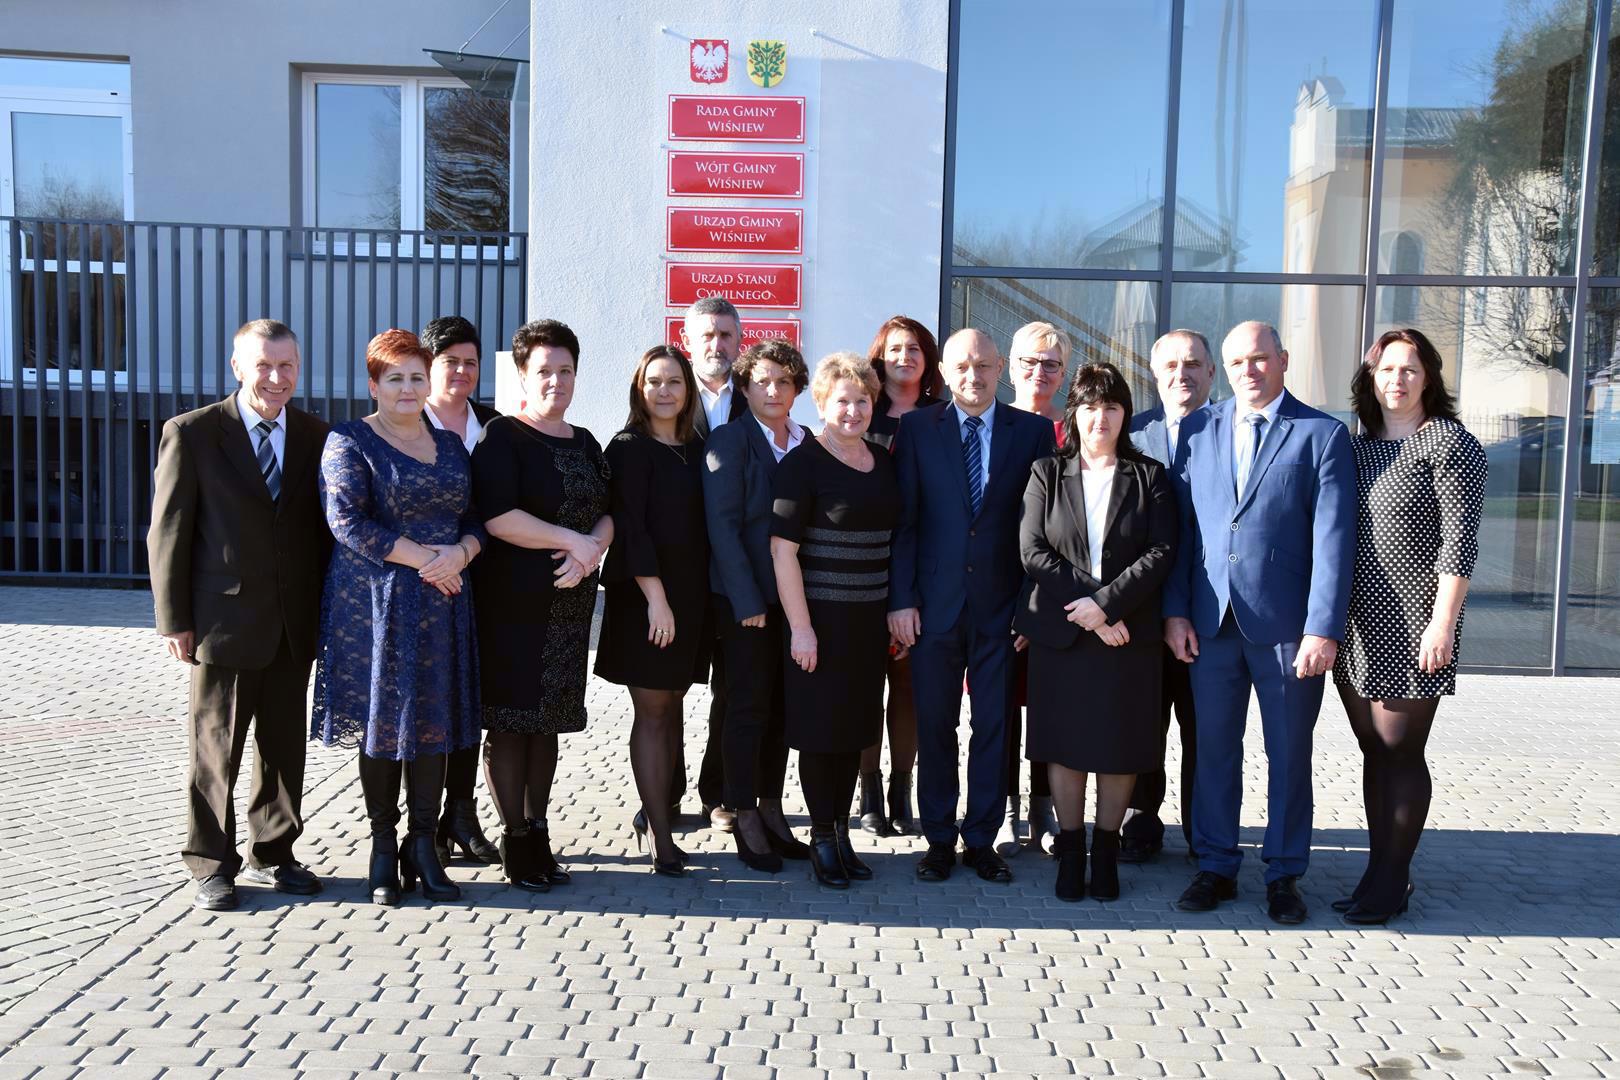 Grupa dorosłych osób przed urzędem gminy Wisniew